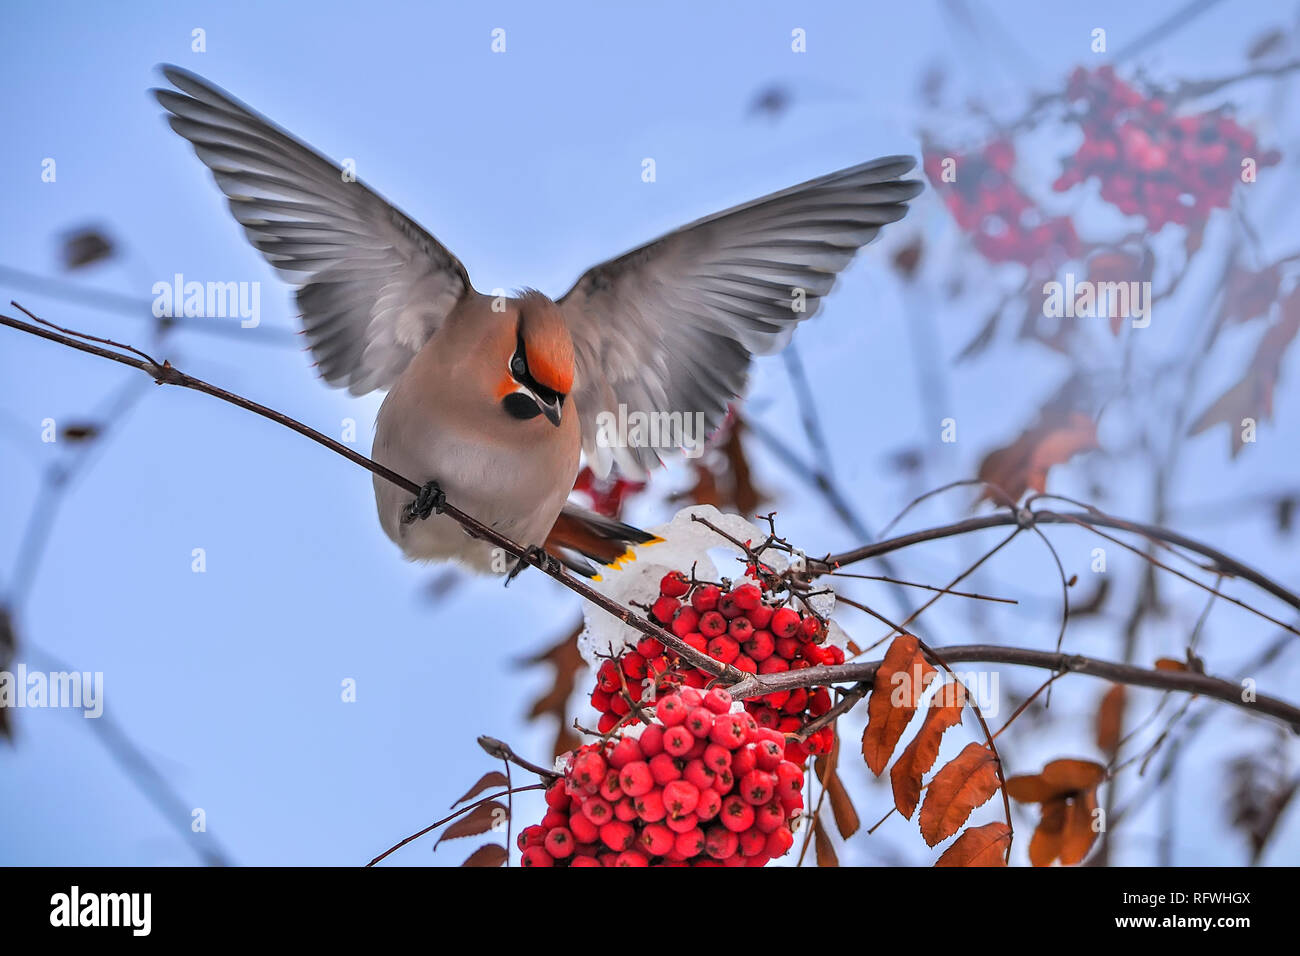 Jaseur boréal Bombycilla garrulus ou d'oiseaux aux ailes déployées se nourrissant de Rowan Tree branch avec fruits rouges. Beau ciel bleu doux hiver zone Banque D'Images